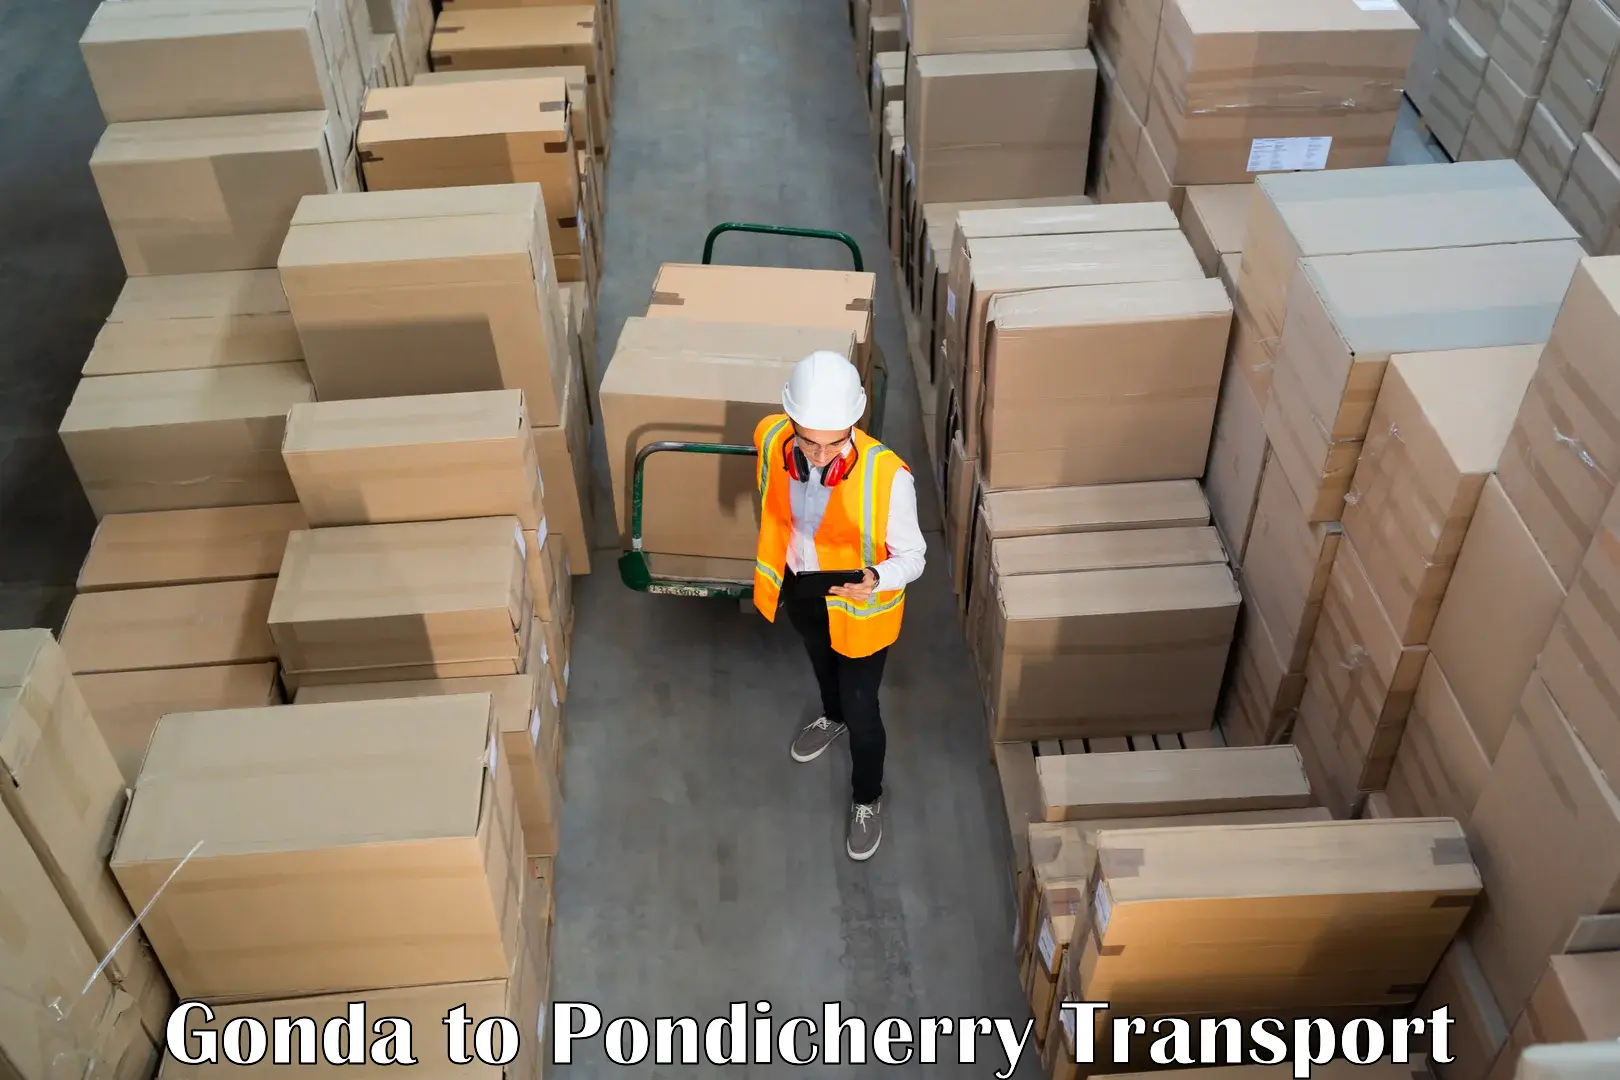 International cargo transportation services Gonda to Pondicherry University